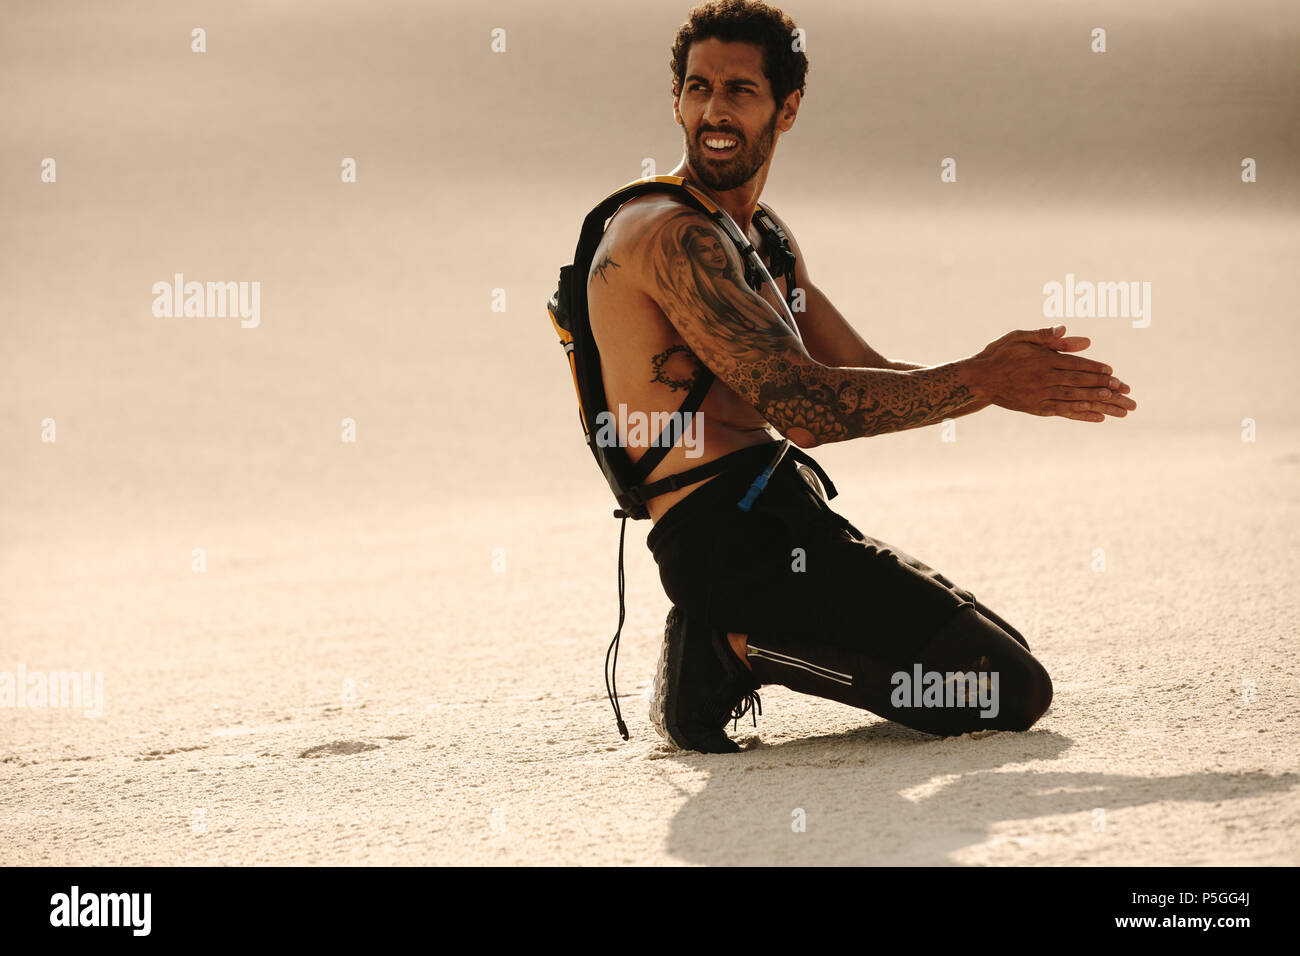 Homme musclé se reposant sur une dune de sable et frottant ses mains mouillées avec du sable pour sécher. homme de fitness prenant une pause après l'entraînement en plein air. Banque D'Images